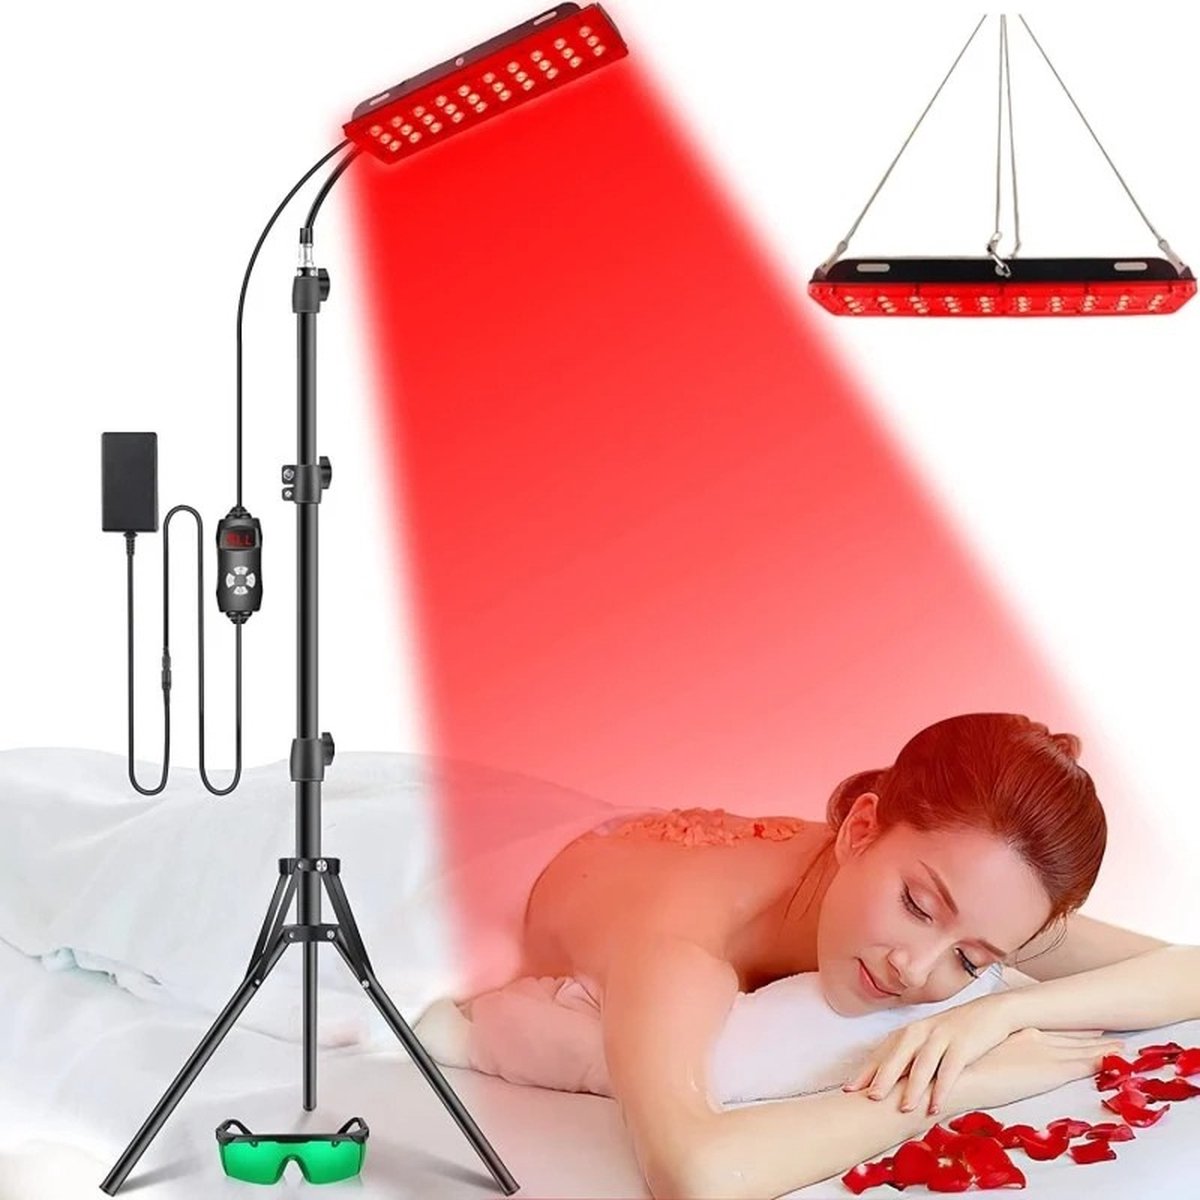 Infraroodlamp - Infrarood Lamp - Infrarood Lamp Voor Spieren - Infrarood Lamp Gewrichten - Hoogte Instelbaar - Zwart - Merkloos